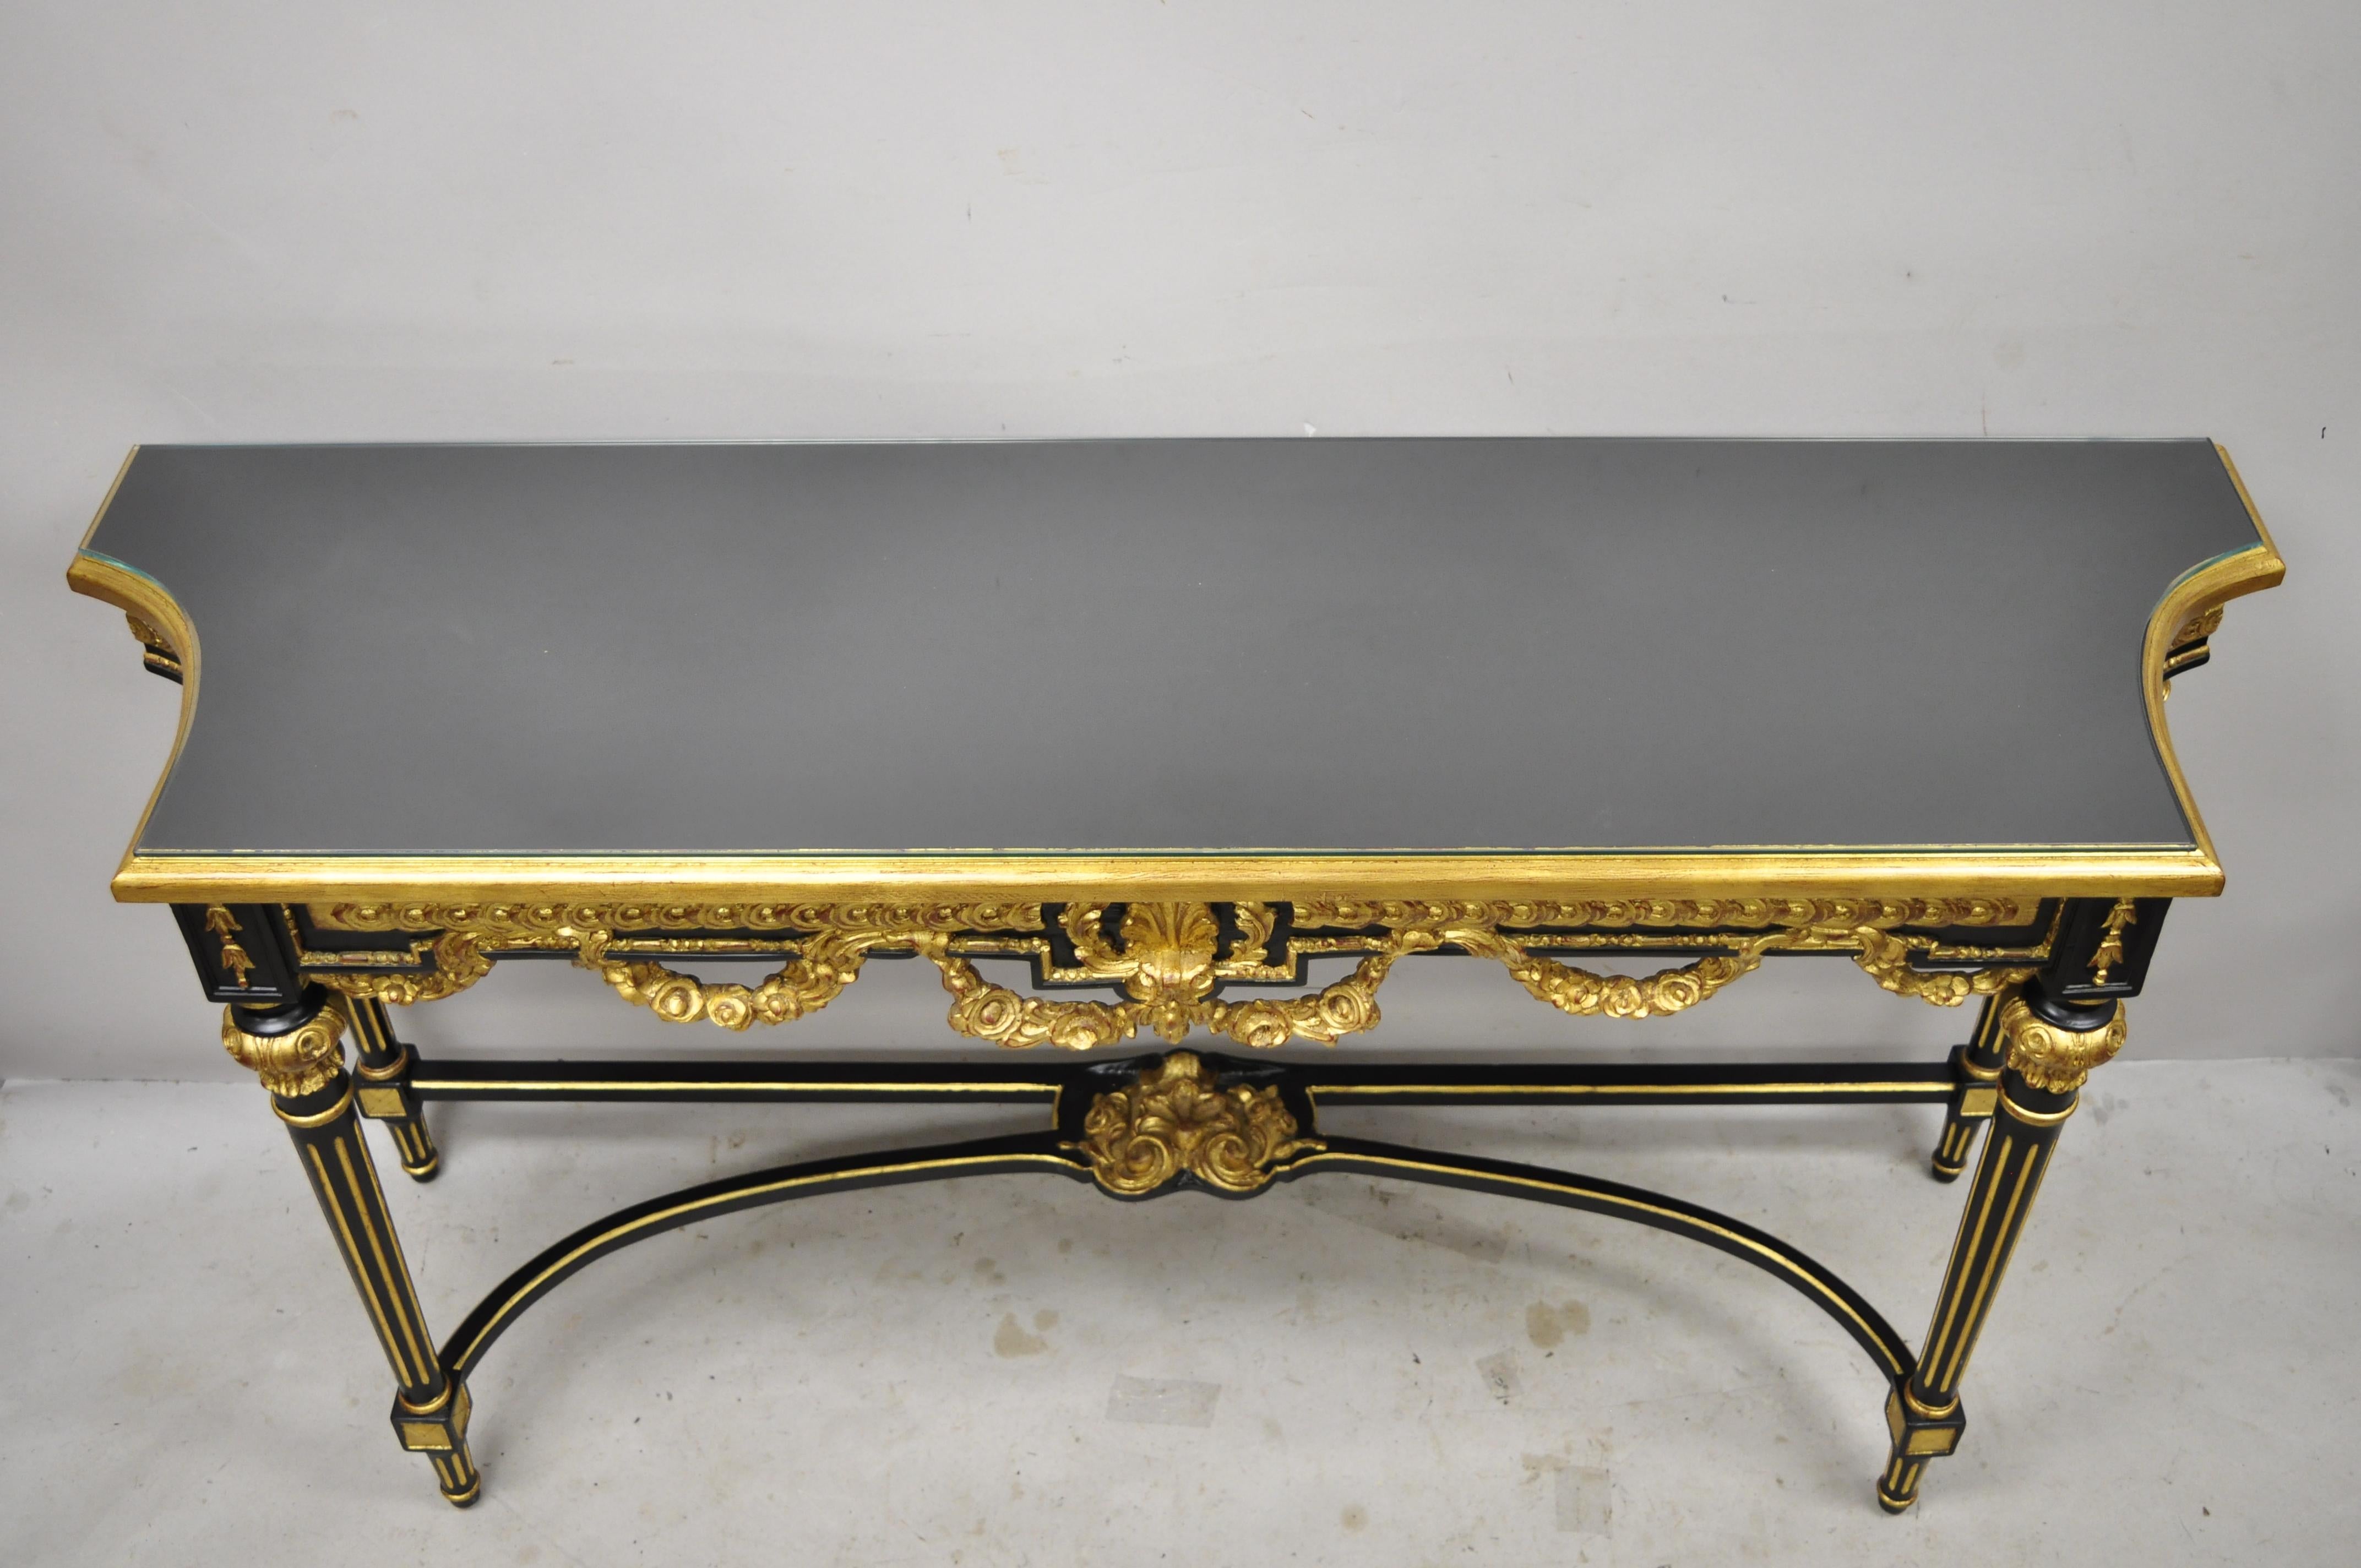 Table de salle console canapé de style Jansen en laque noire dorée de style Louis XVI. Cette pièce présente un plateau en verre, des détails dorés, une finition laquée noire, une construction en bois massif, des détails joliment sculptés, des pieds